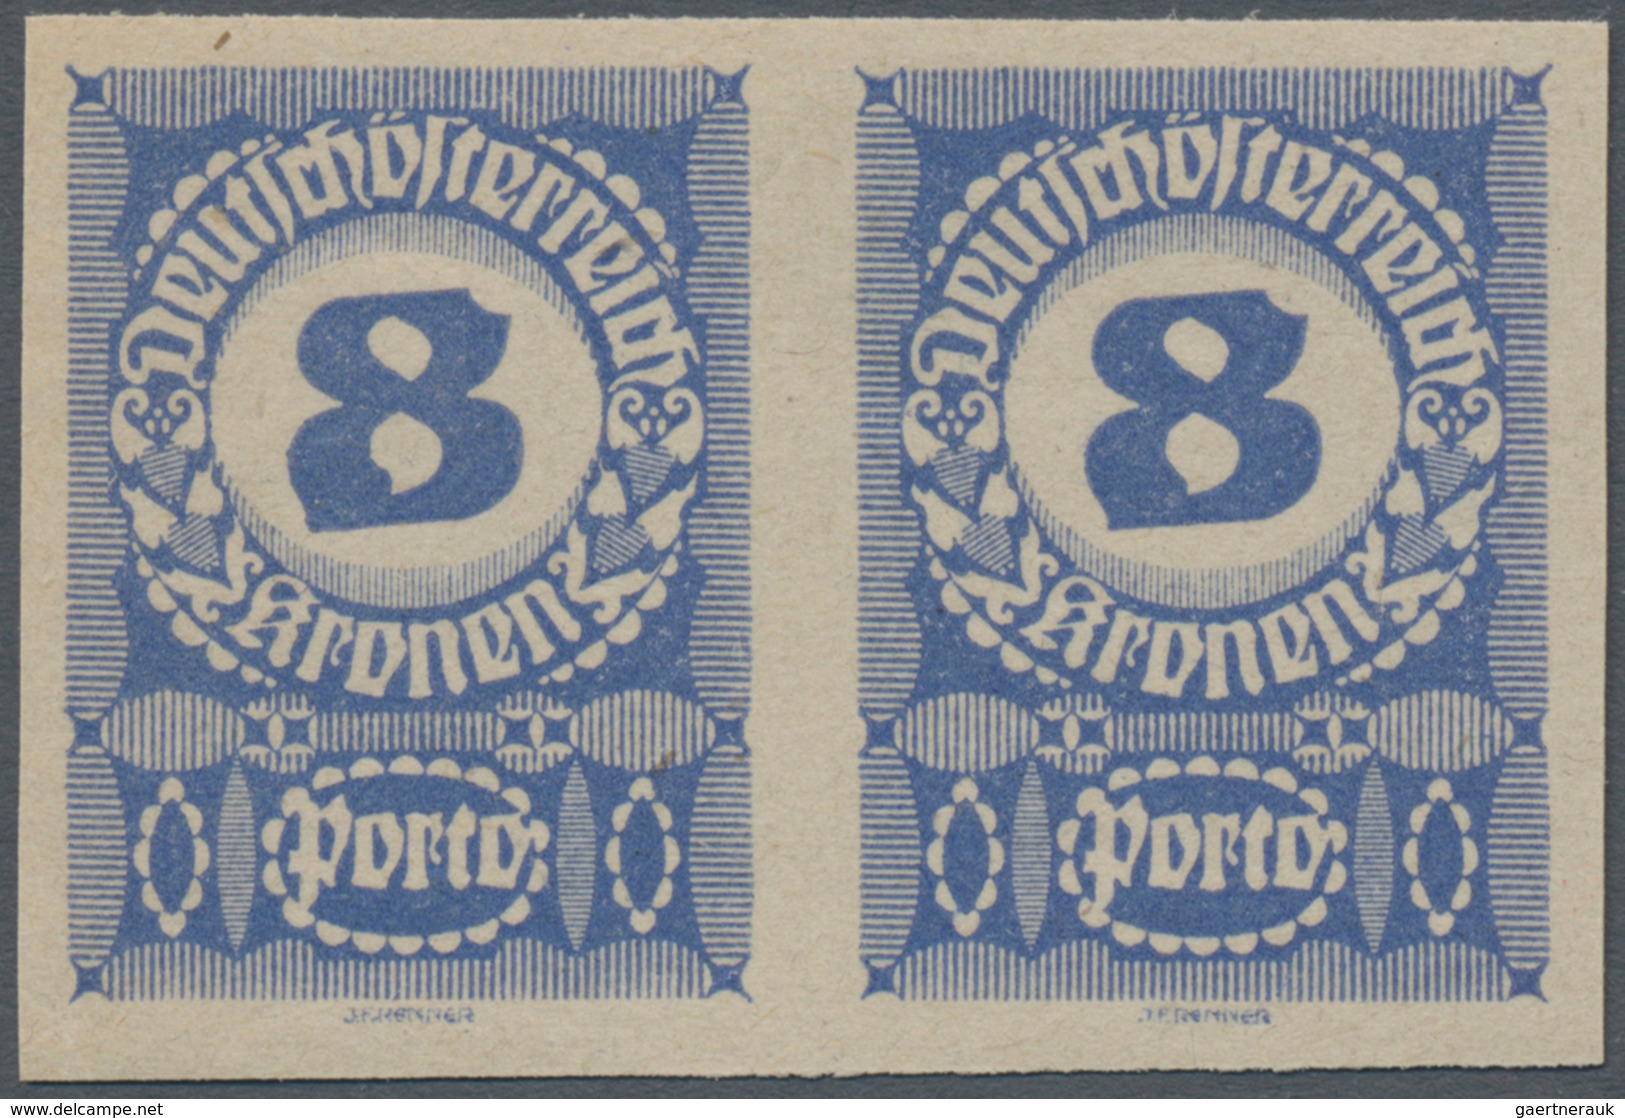 Österreich - Portomarken: 1920/1921, Ziffern, 1 Kr. bis 20 Kr., neun Werte in ungezähnten waagerecht